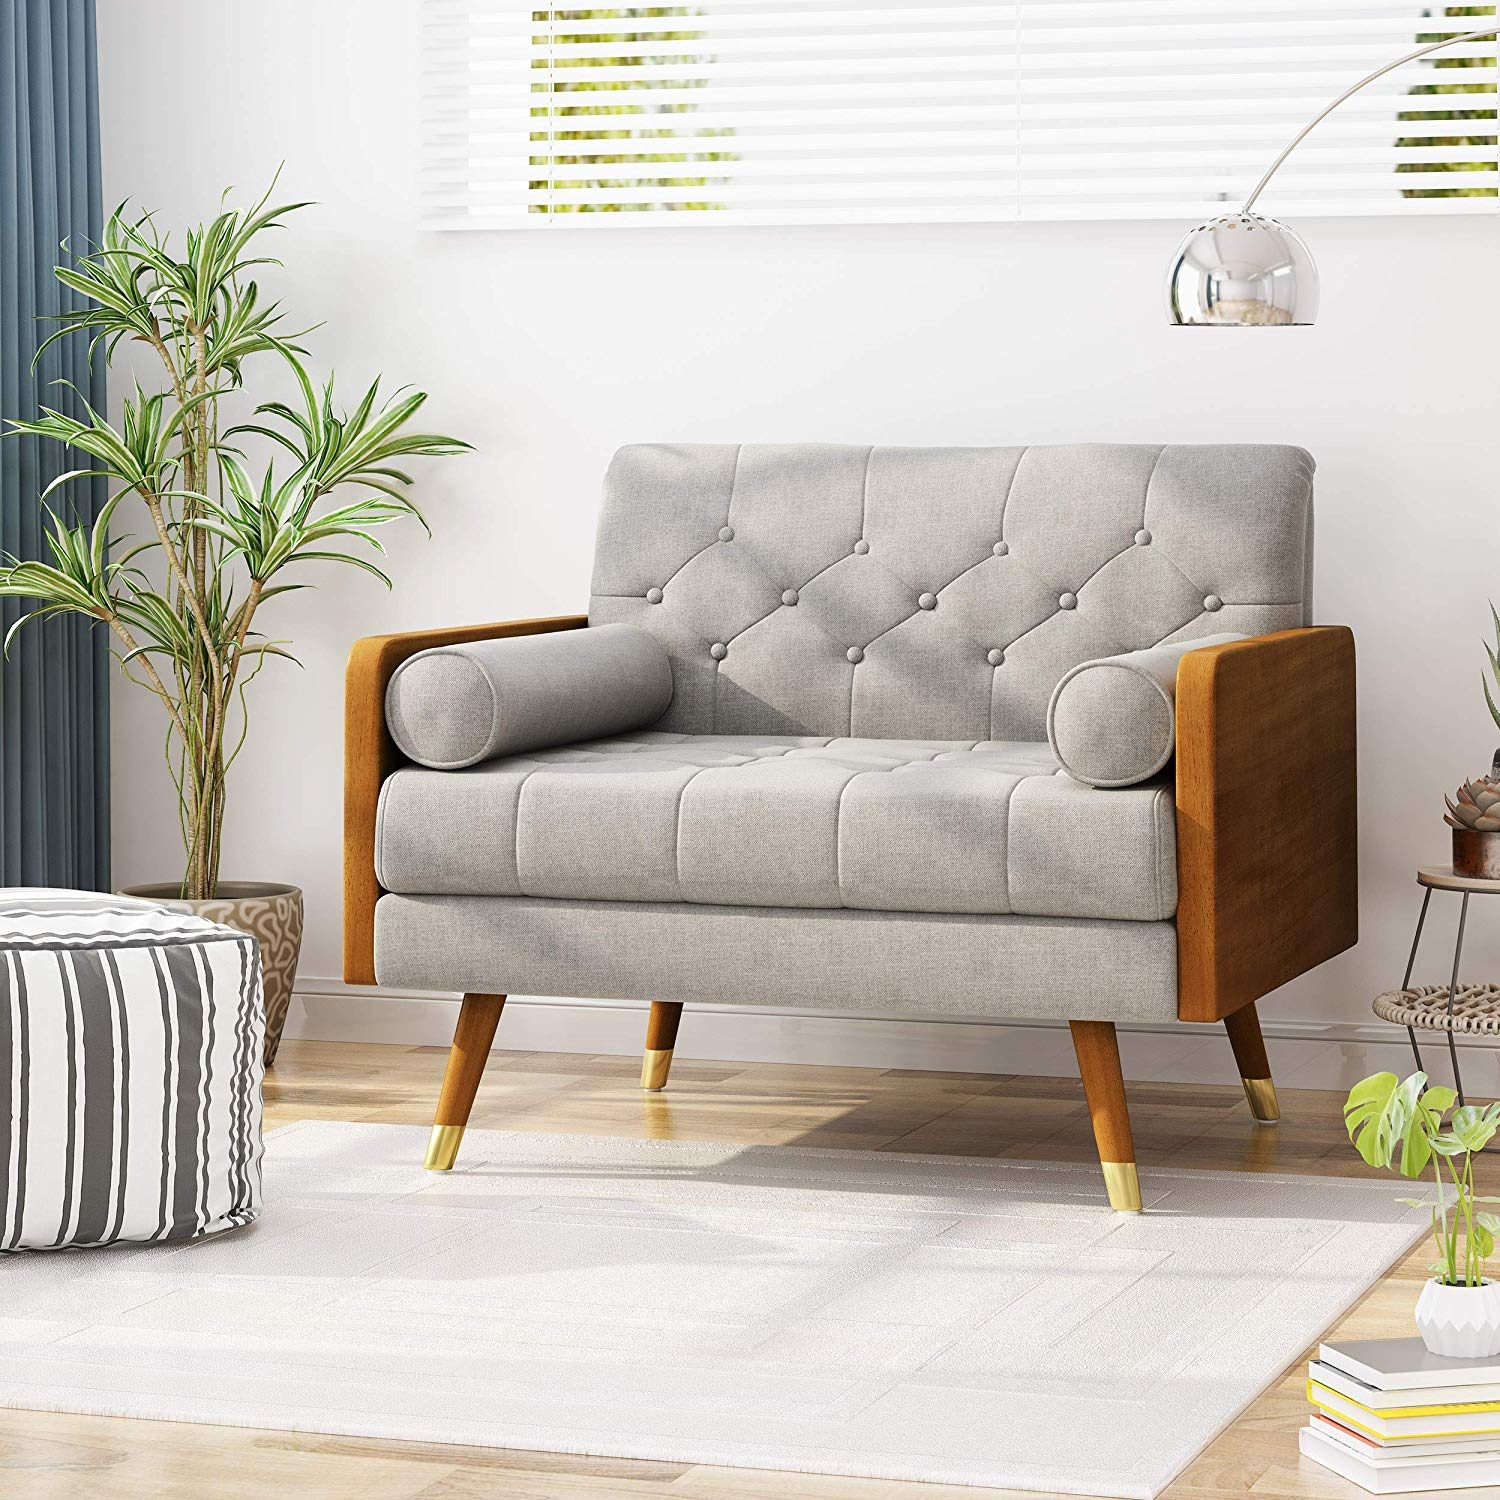 Little Modern Sofa For livingroom with cream linen fabric design